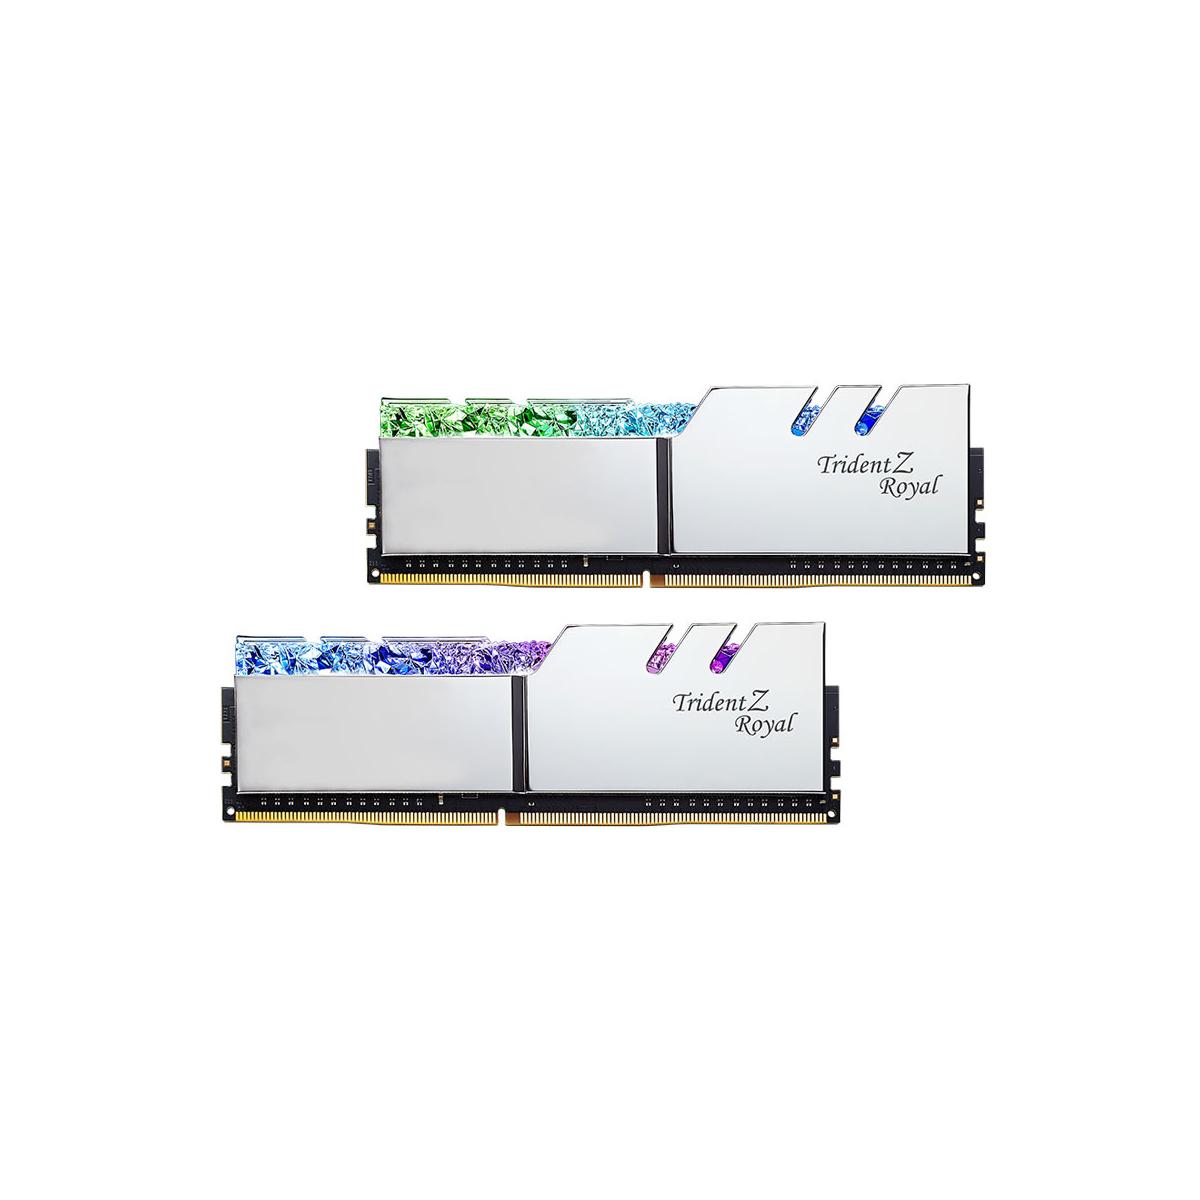 MEMORIA DIMM DDR4 G.SKILL (F4-3200C16D-16GTRS) 16GB (2X8GB) 3200MHZ, TRIDENT Z ROYAL SILVER - GSKILL